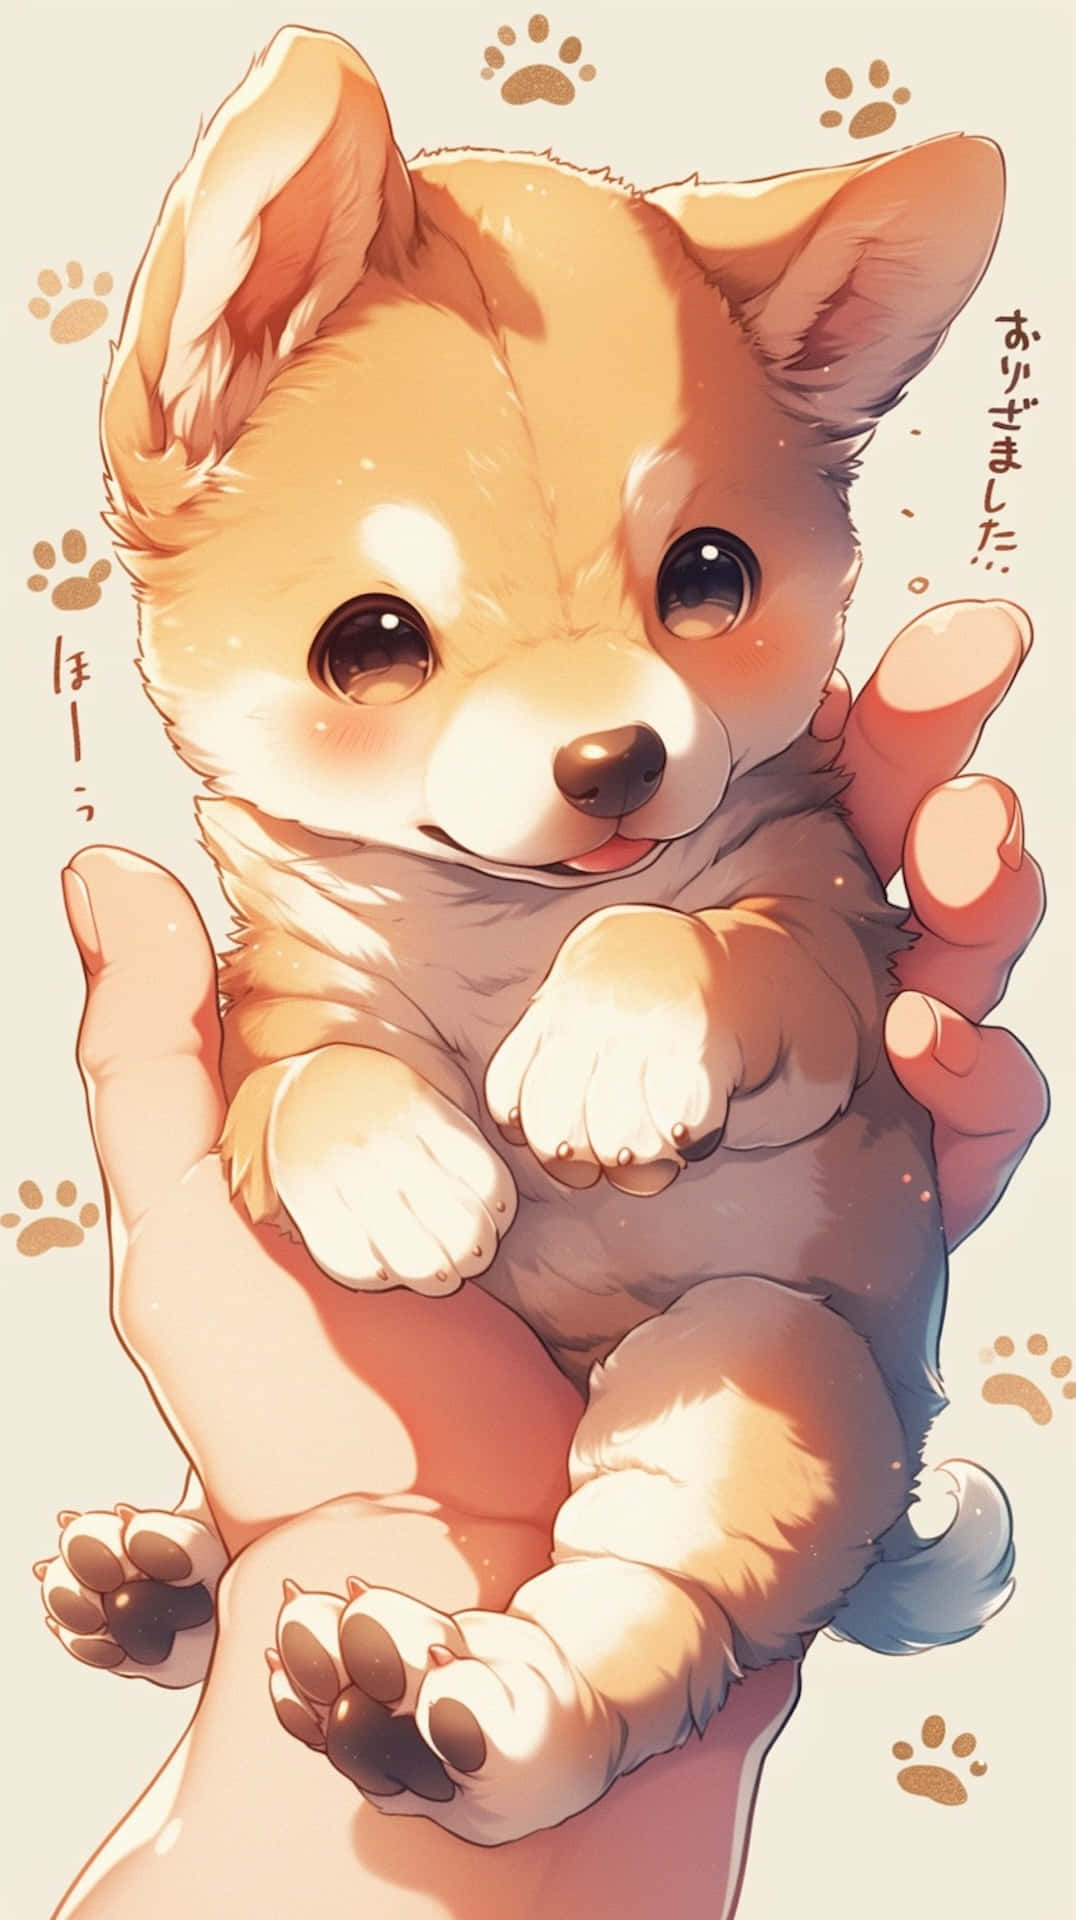 Adorable Anime Corgi Puppy Wallpaper